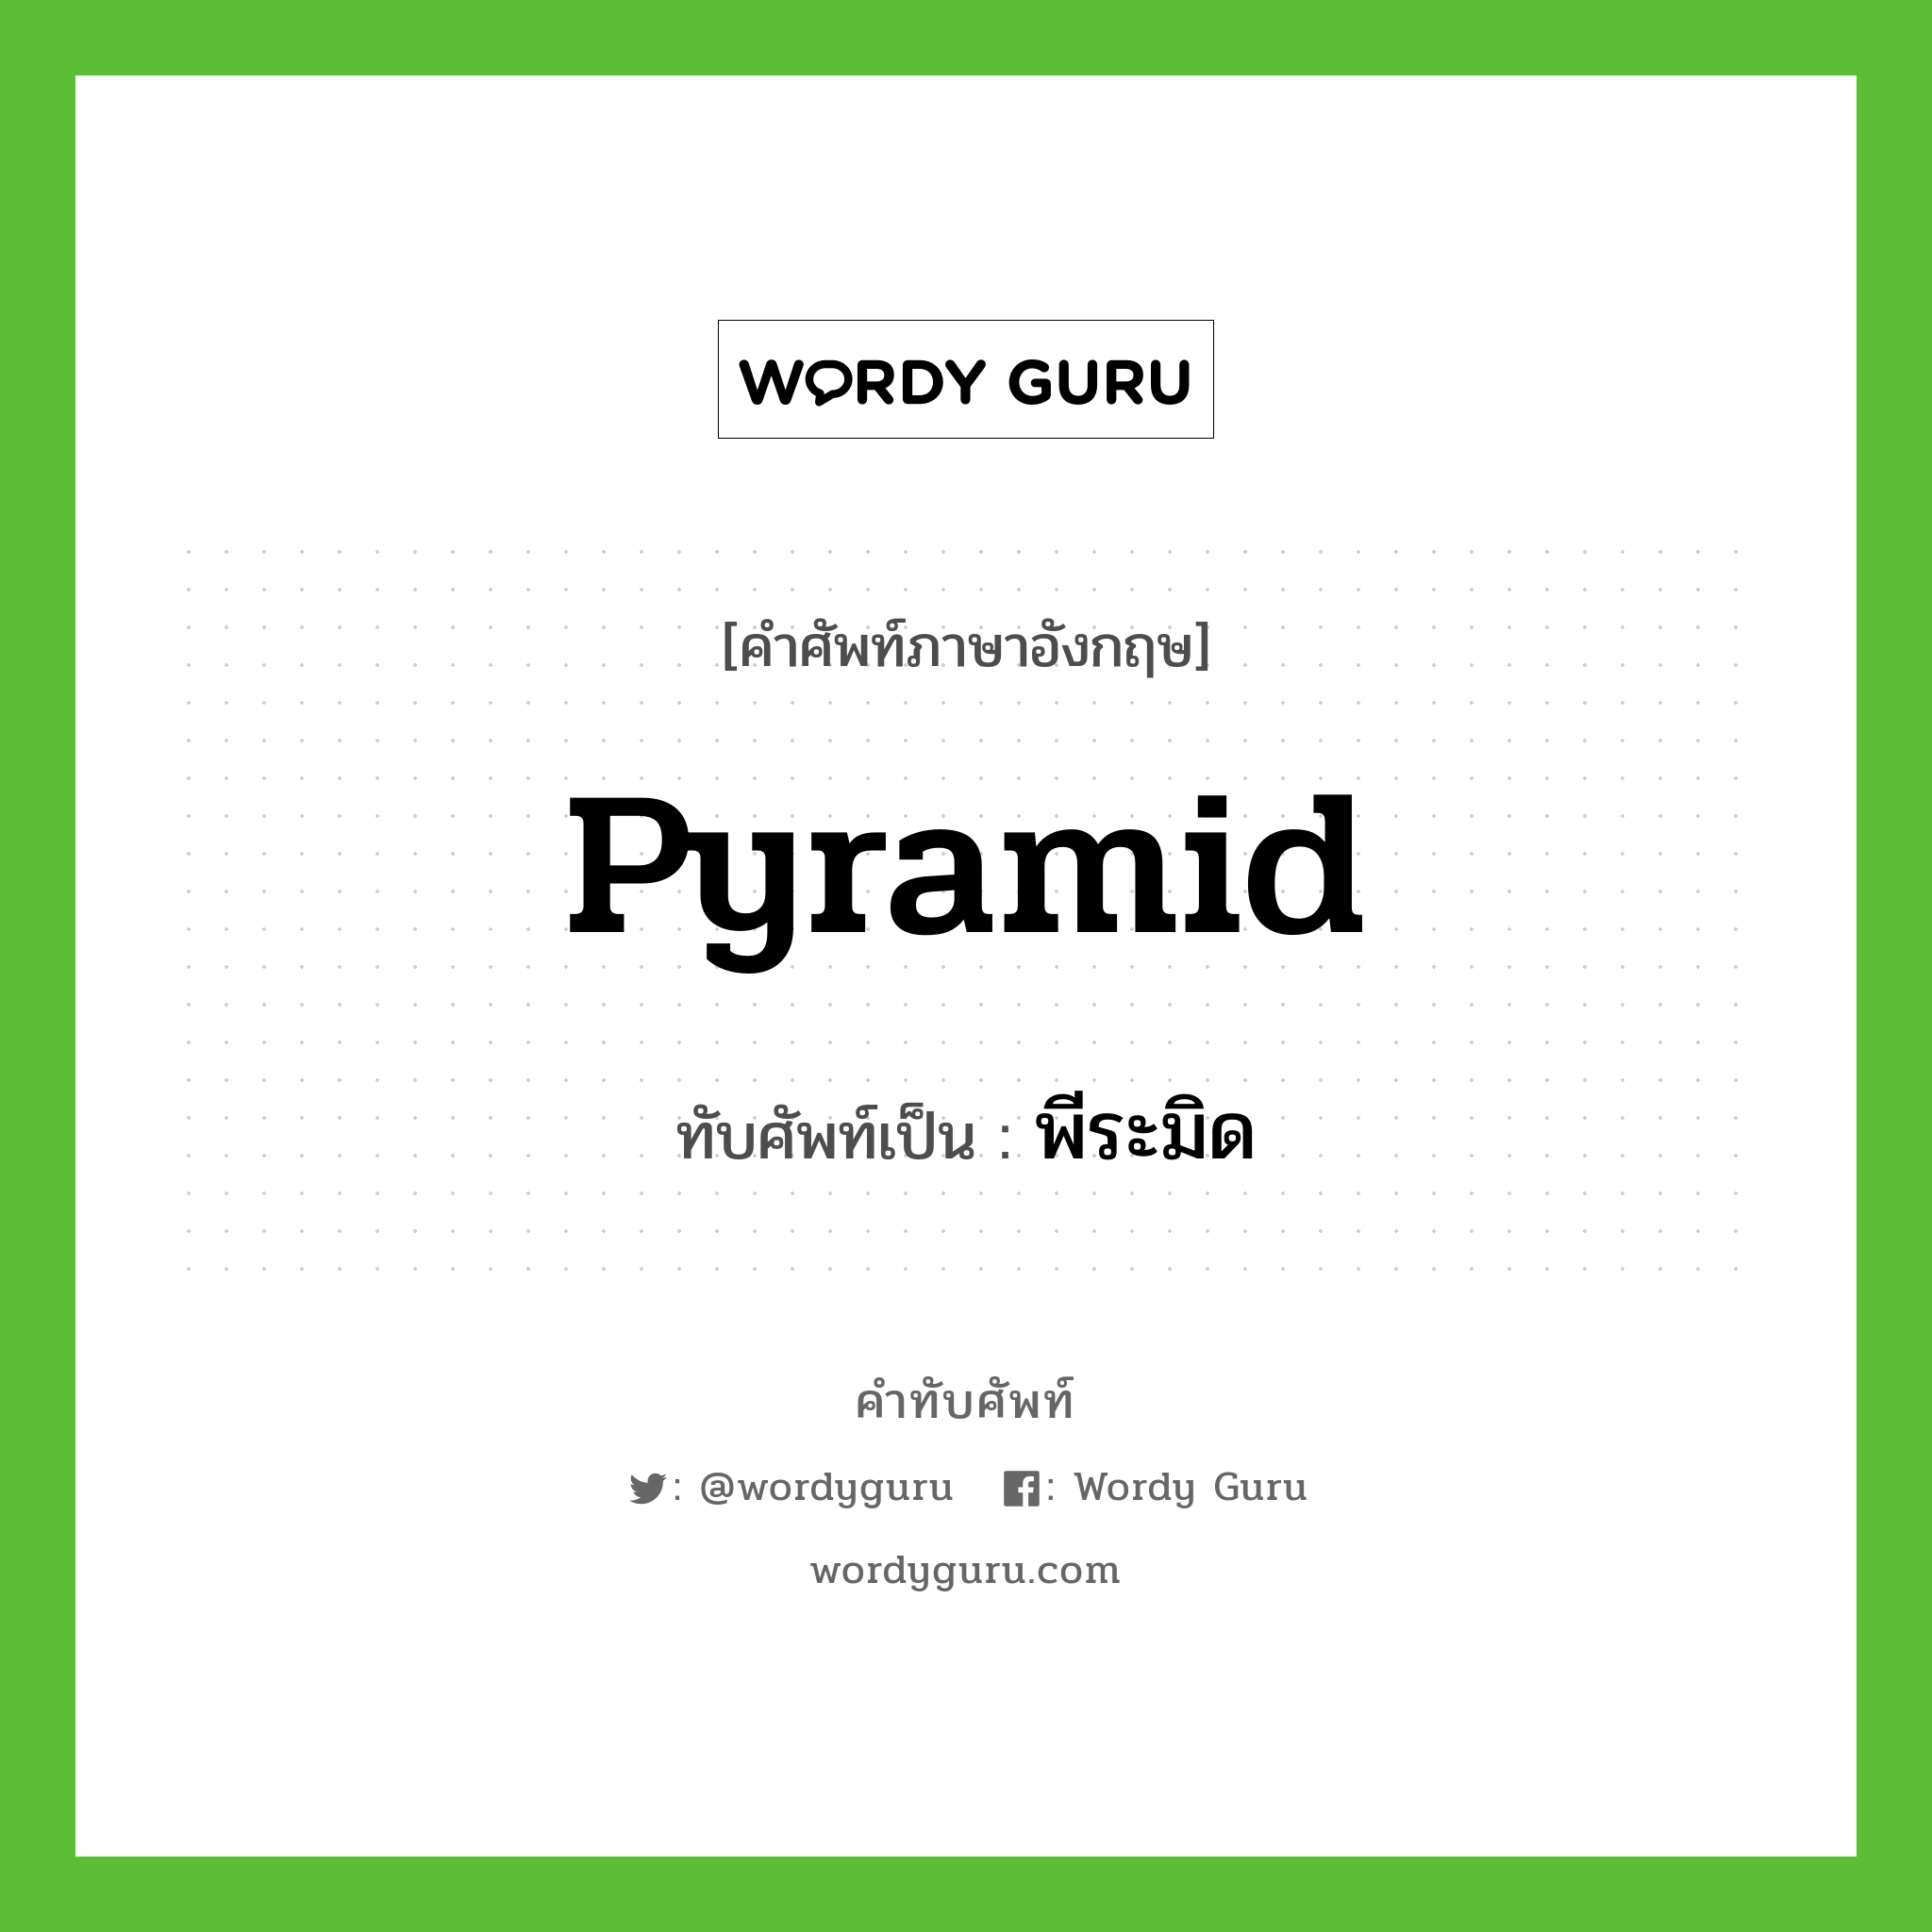 pyramid เขียนเป็นคำไทยว่าอะไร?, คำศัพท์ภาษาอังกฤษ pyramid ทับศัพท์เป็น พีระมิด